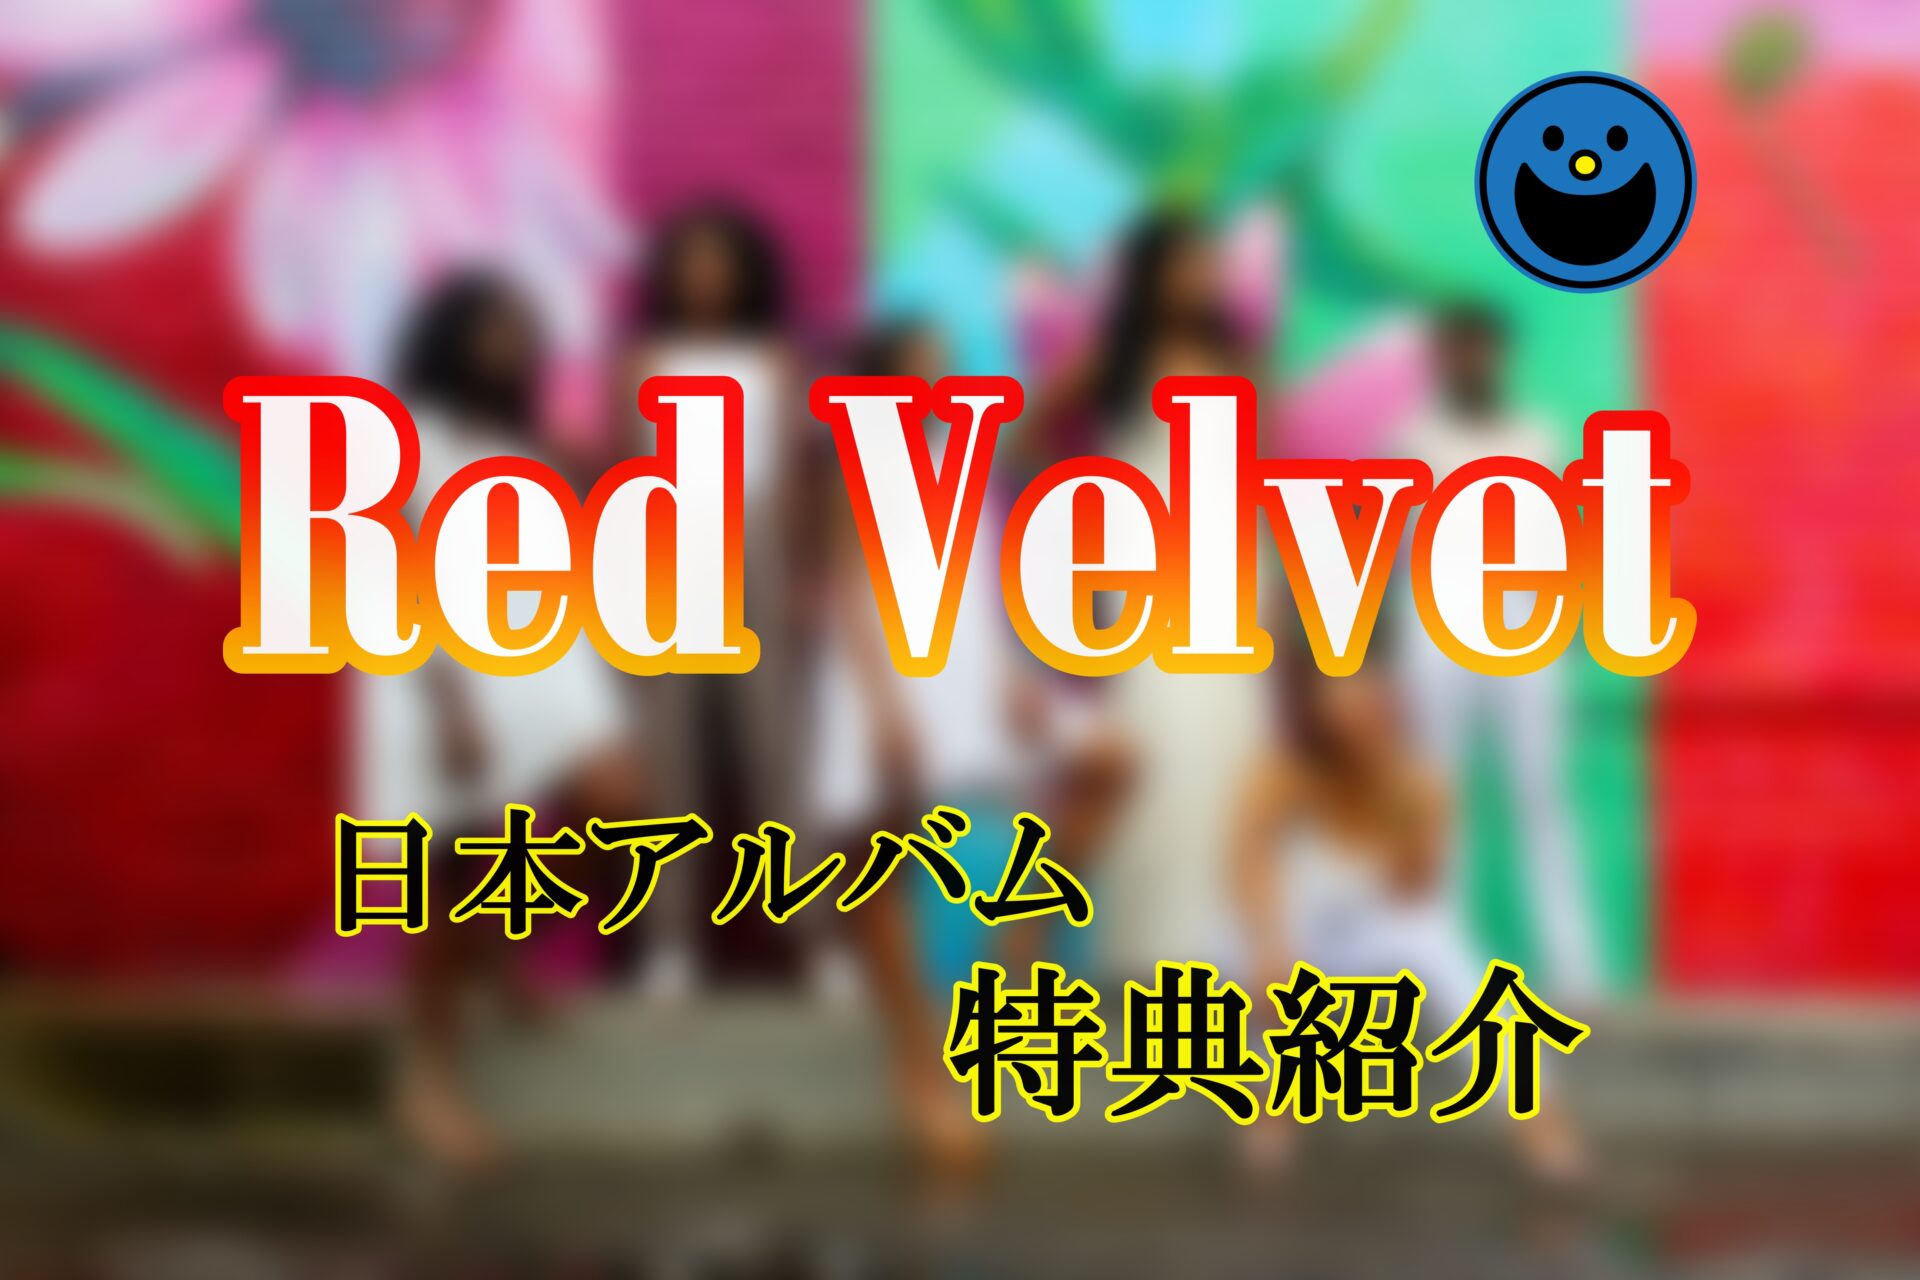 Red Velvet「日本アルバム 特典や収録曲」サムネイル